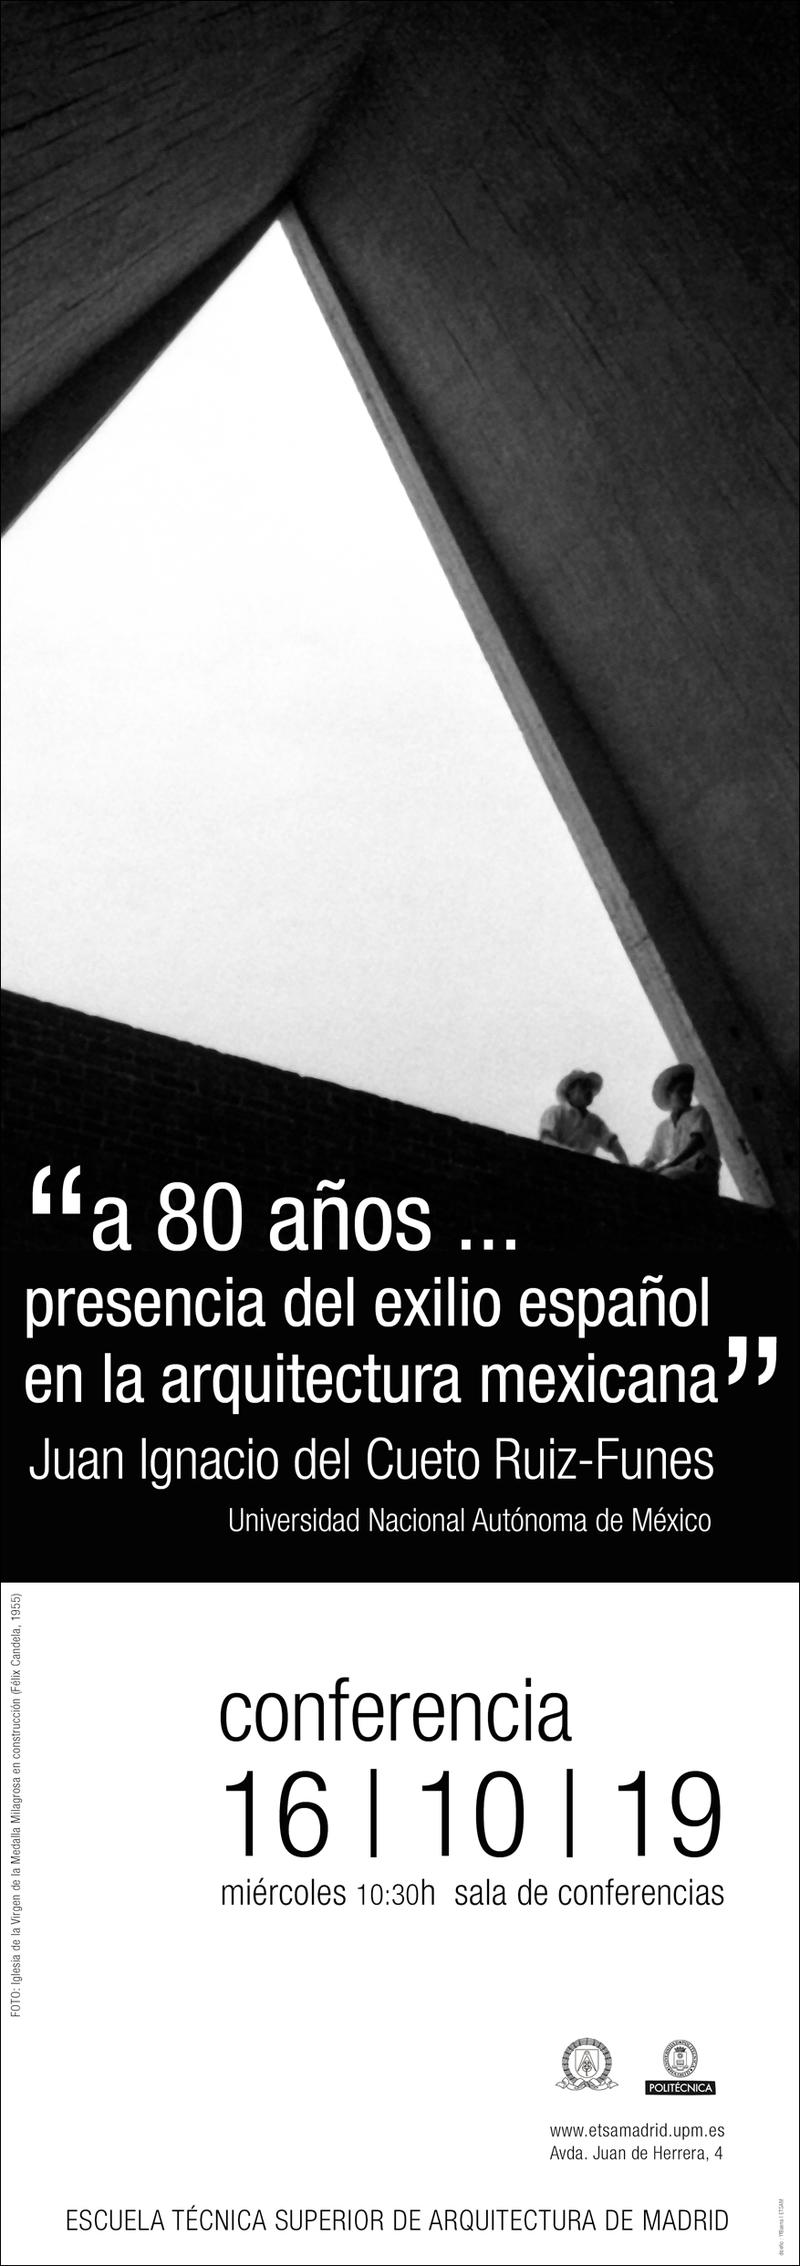 "a 80 años... presencia del exilio español en la arquitectura mexicana"